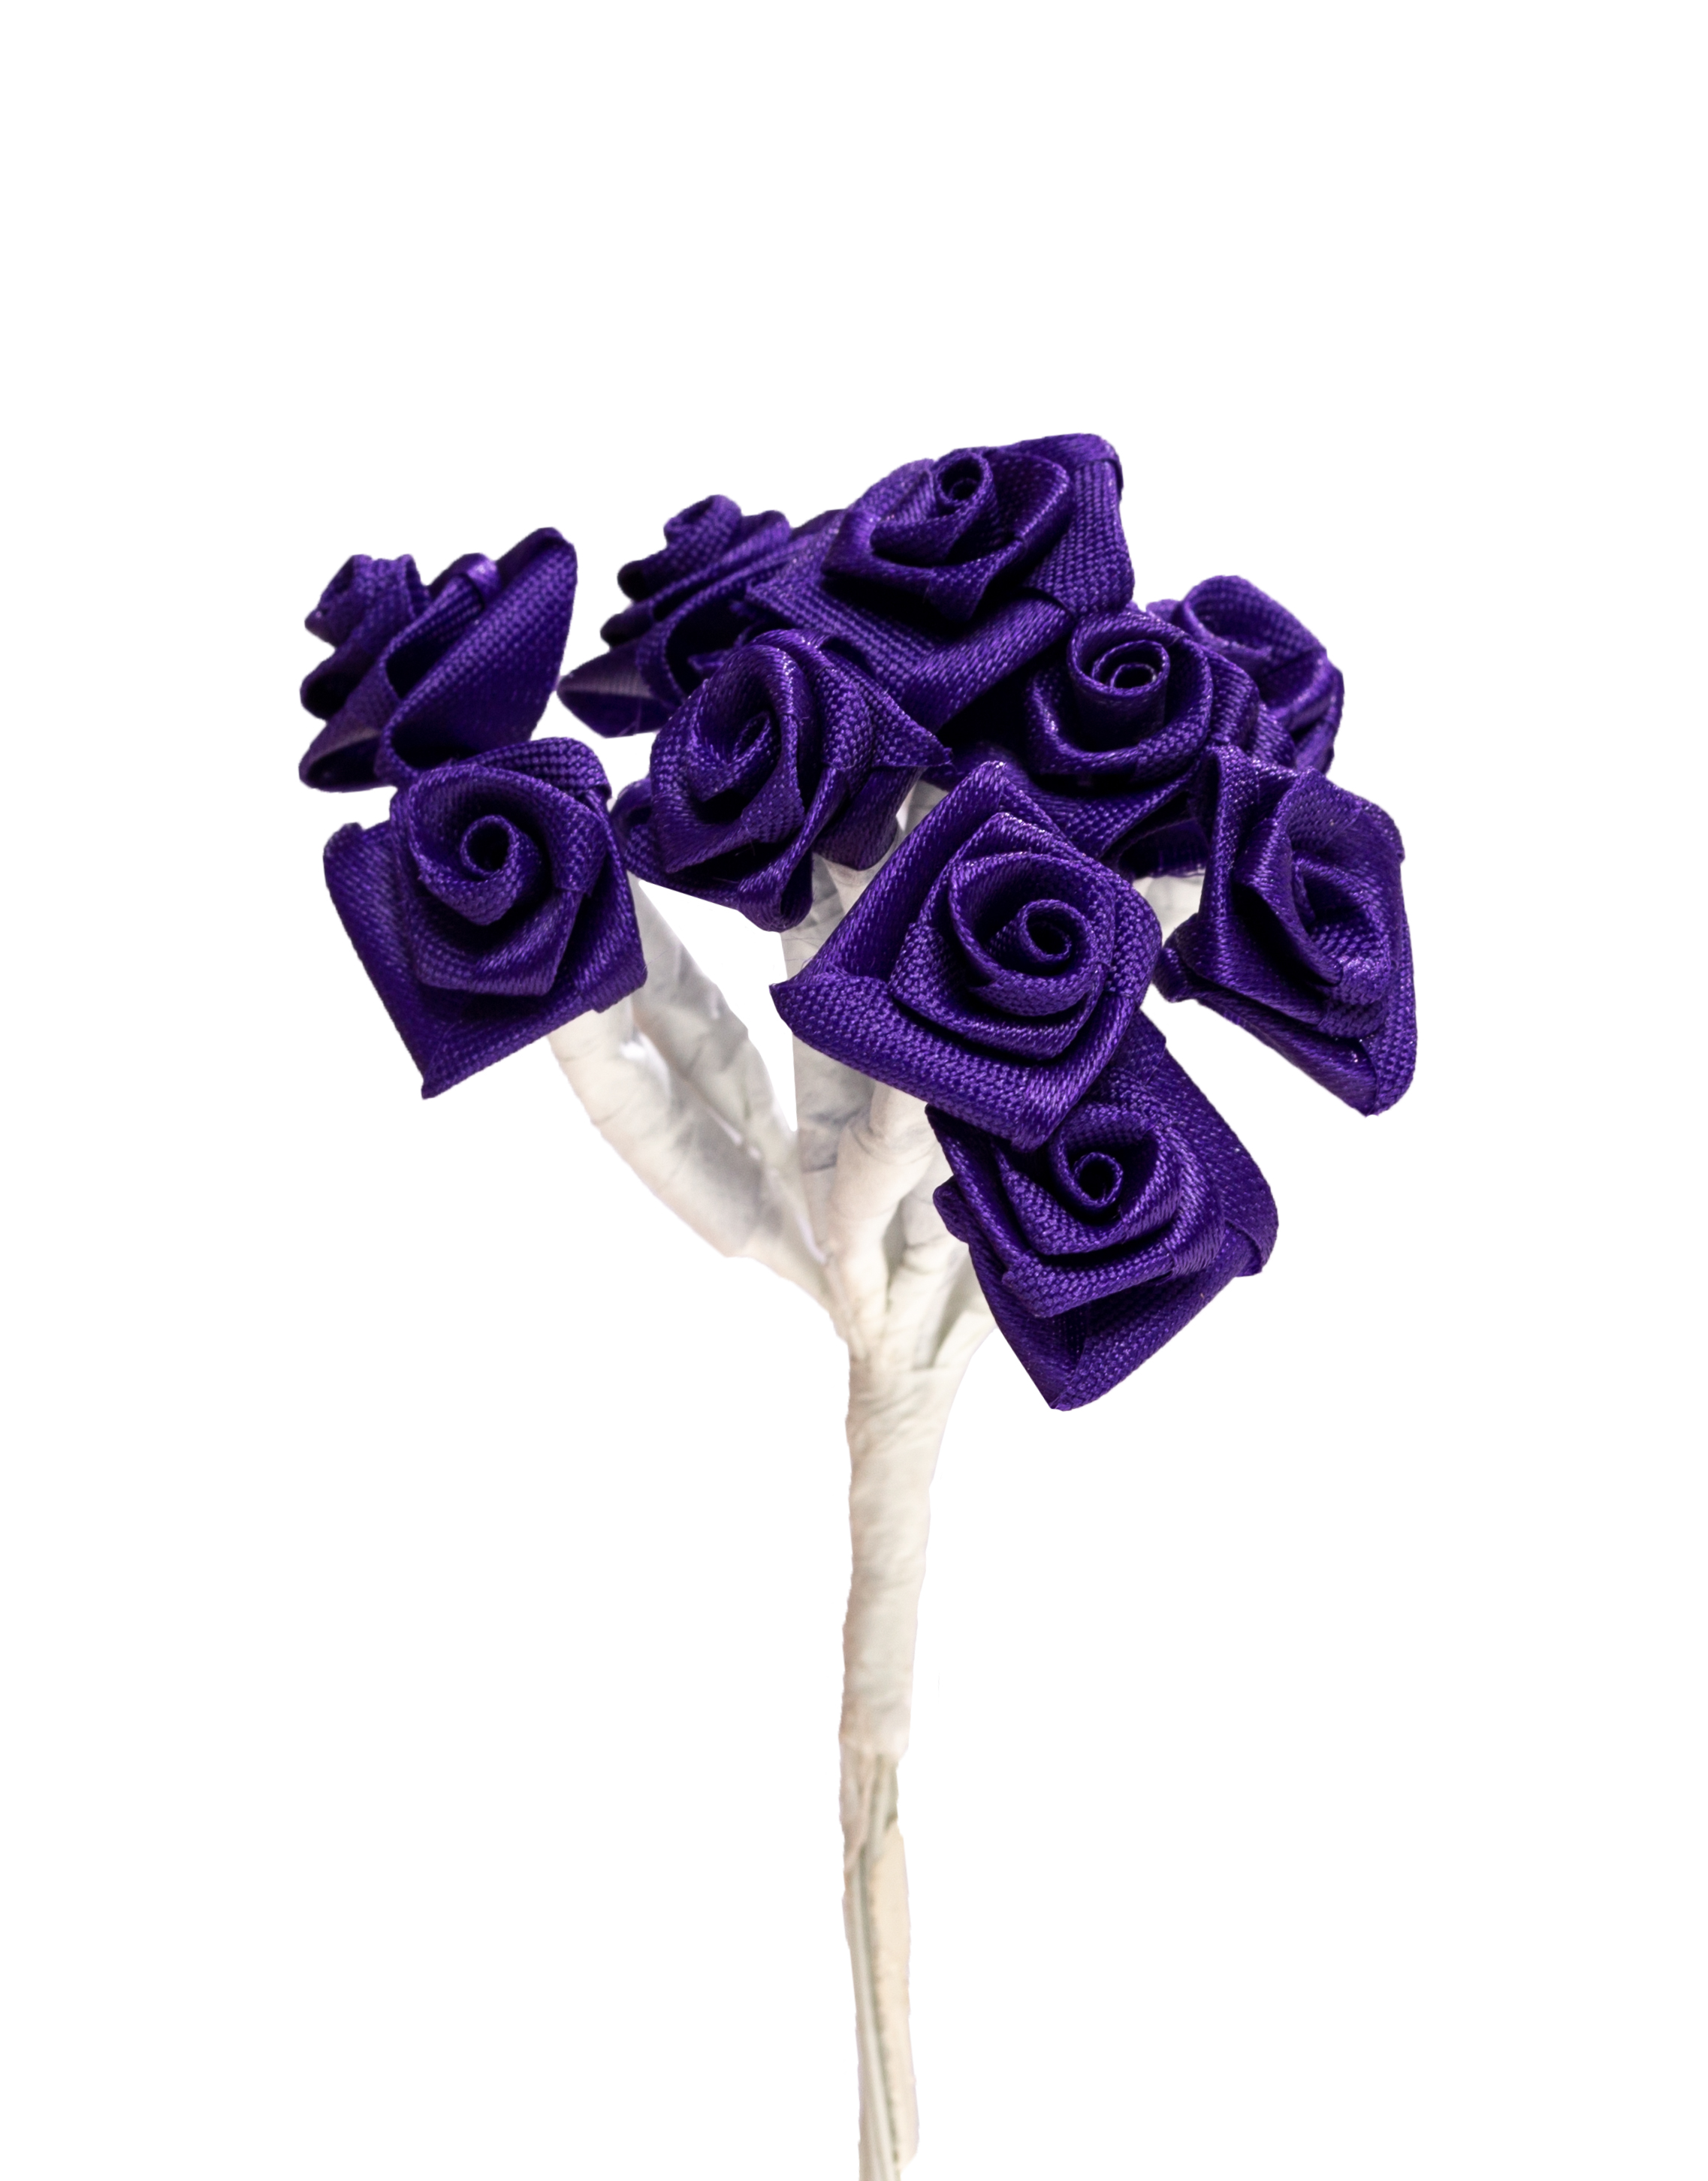 Diorröschen Satinrose violett 1,5cm 12Stk. pro Bund